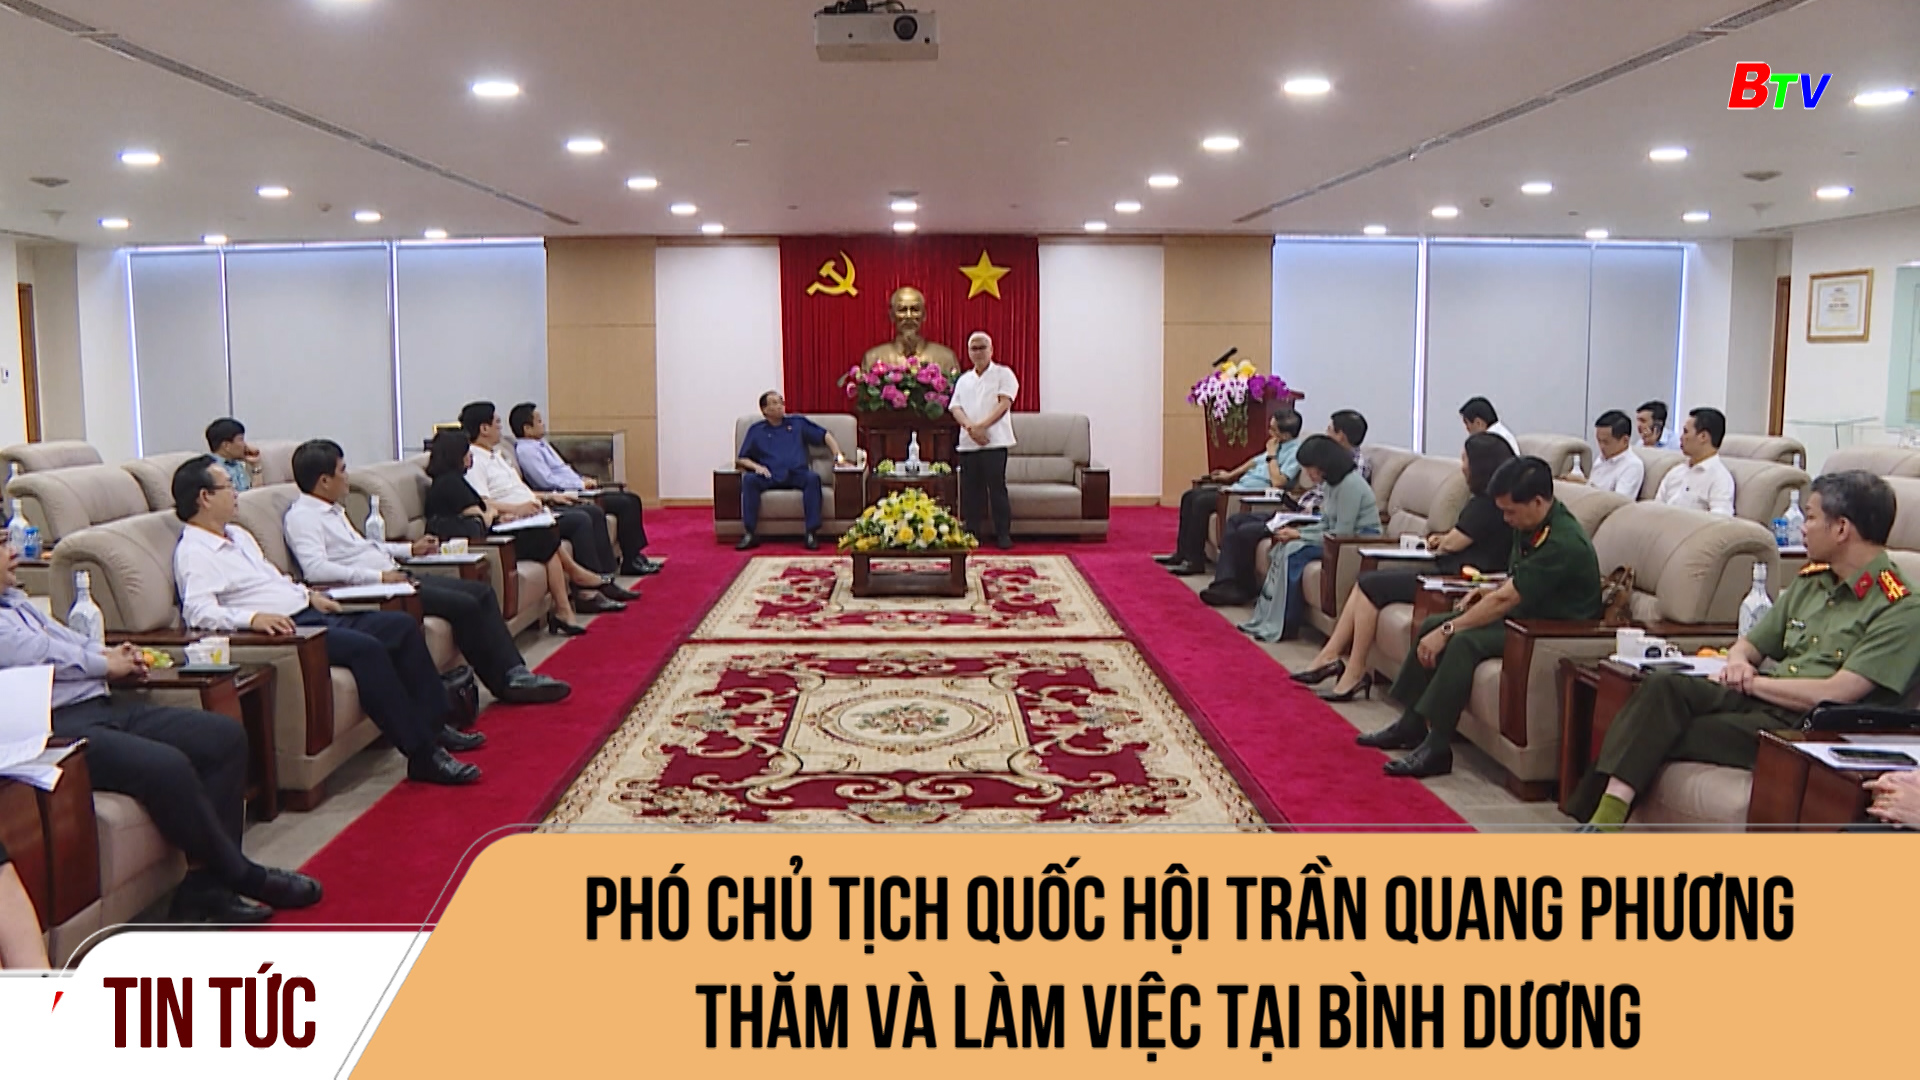 Phó Chủ tịch Quốc hội Trần Quang Phương thăm và làm việc tại Bình Dương	